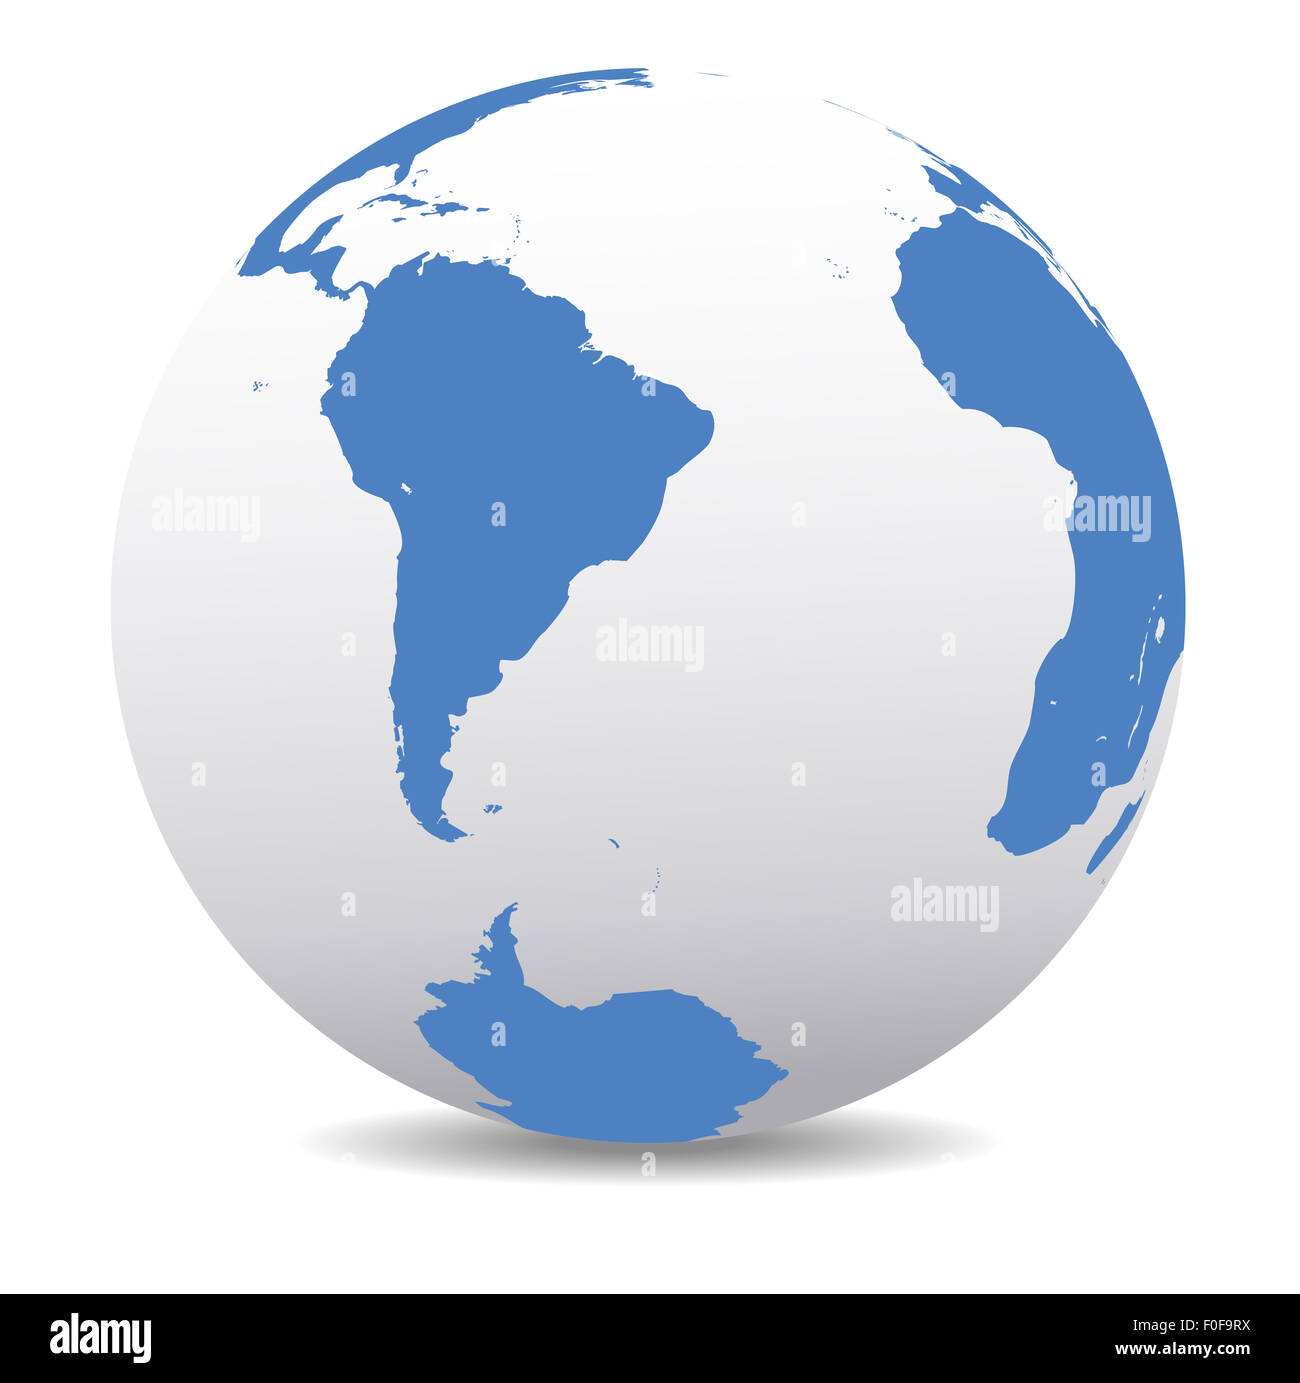 L'Amérique du Sud pôle sud et sud monde global Banque D'Images